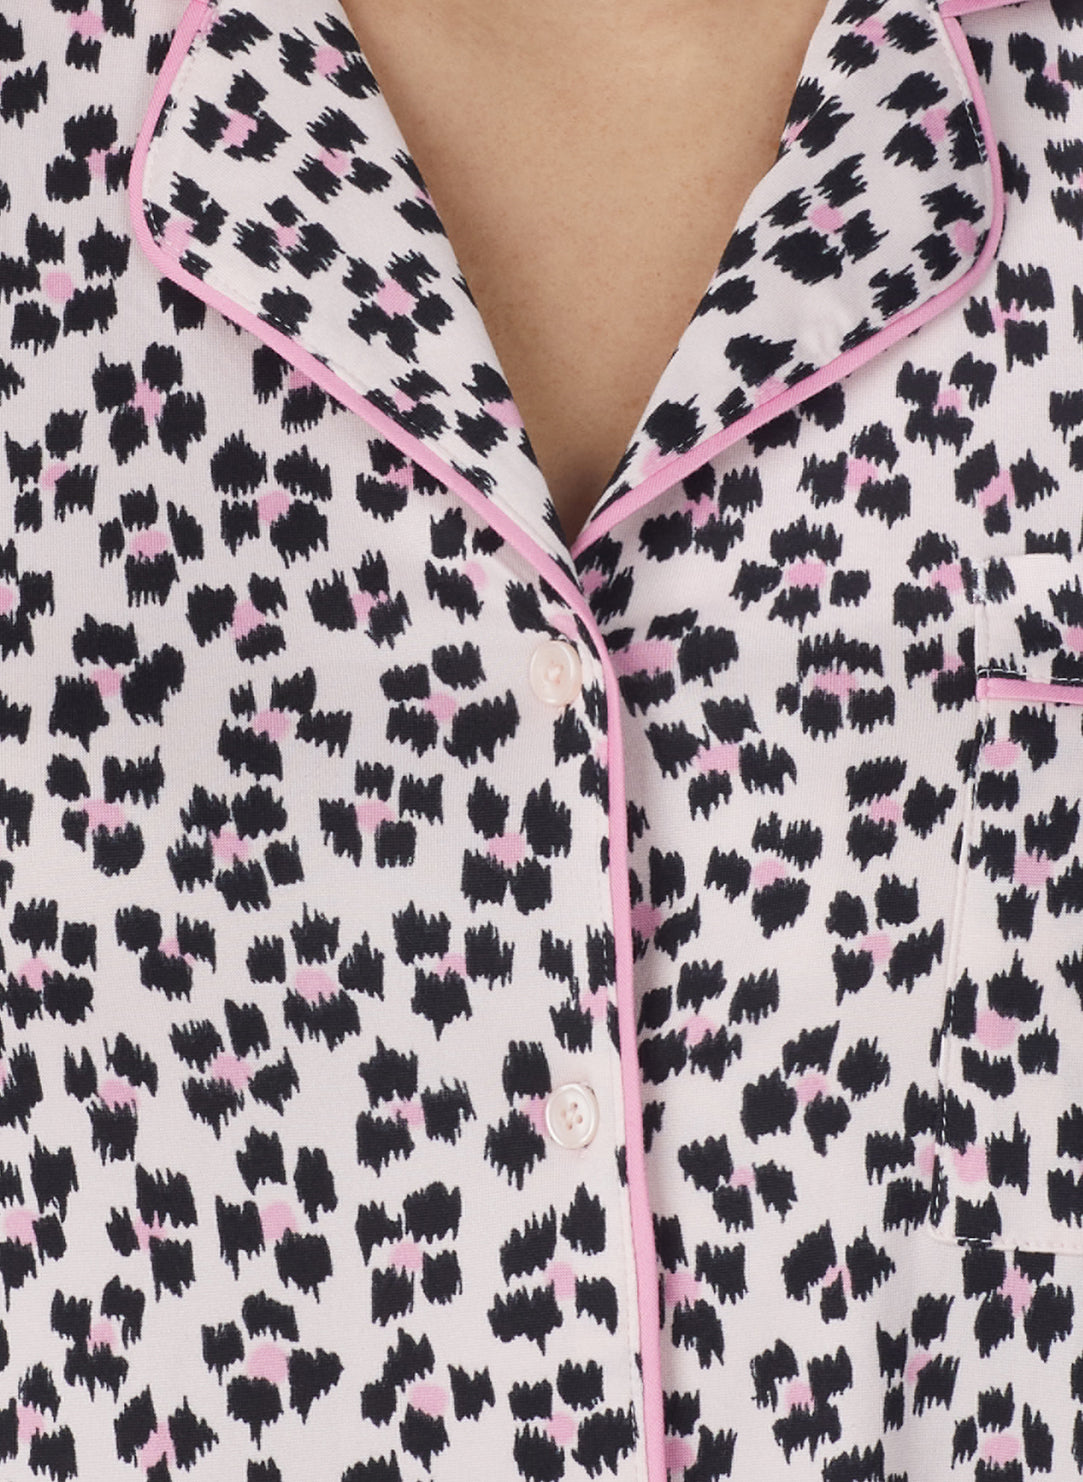 Ikat Leopard Pink Long Pajama Set